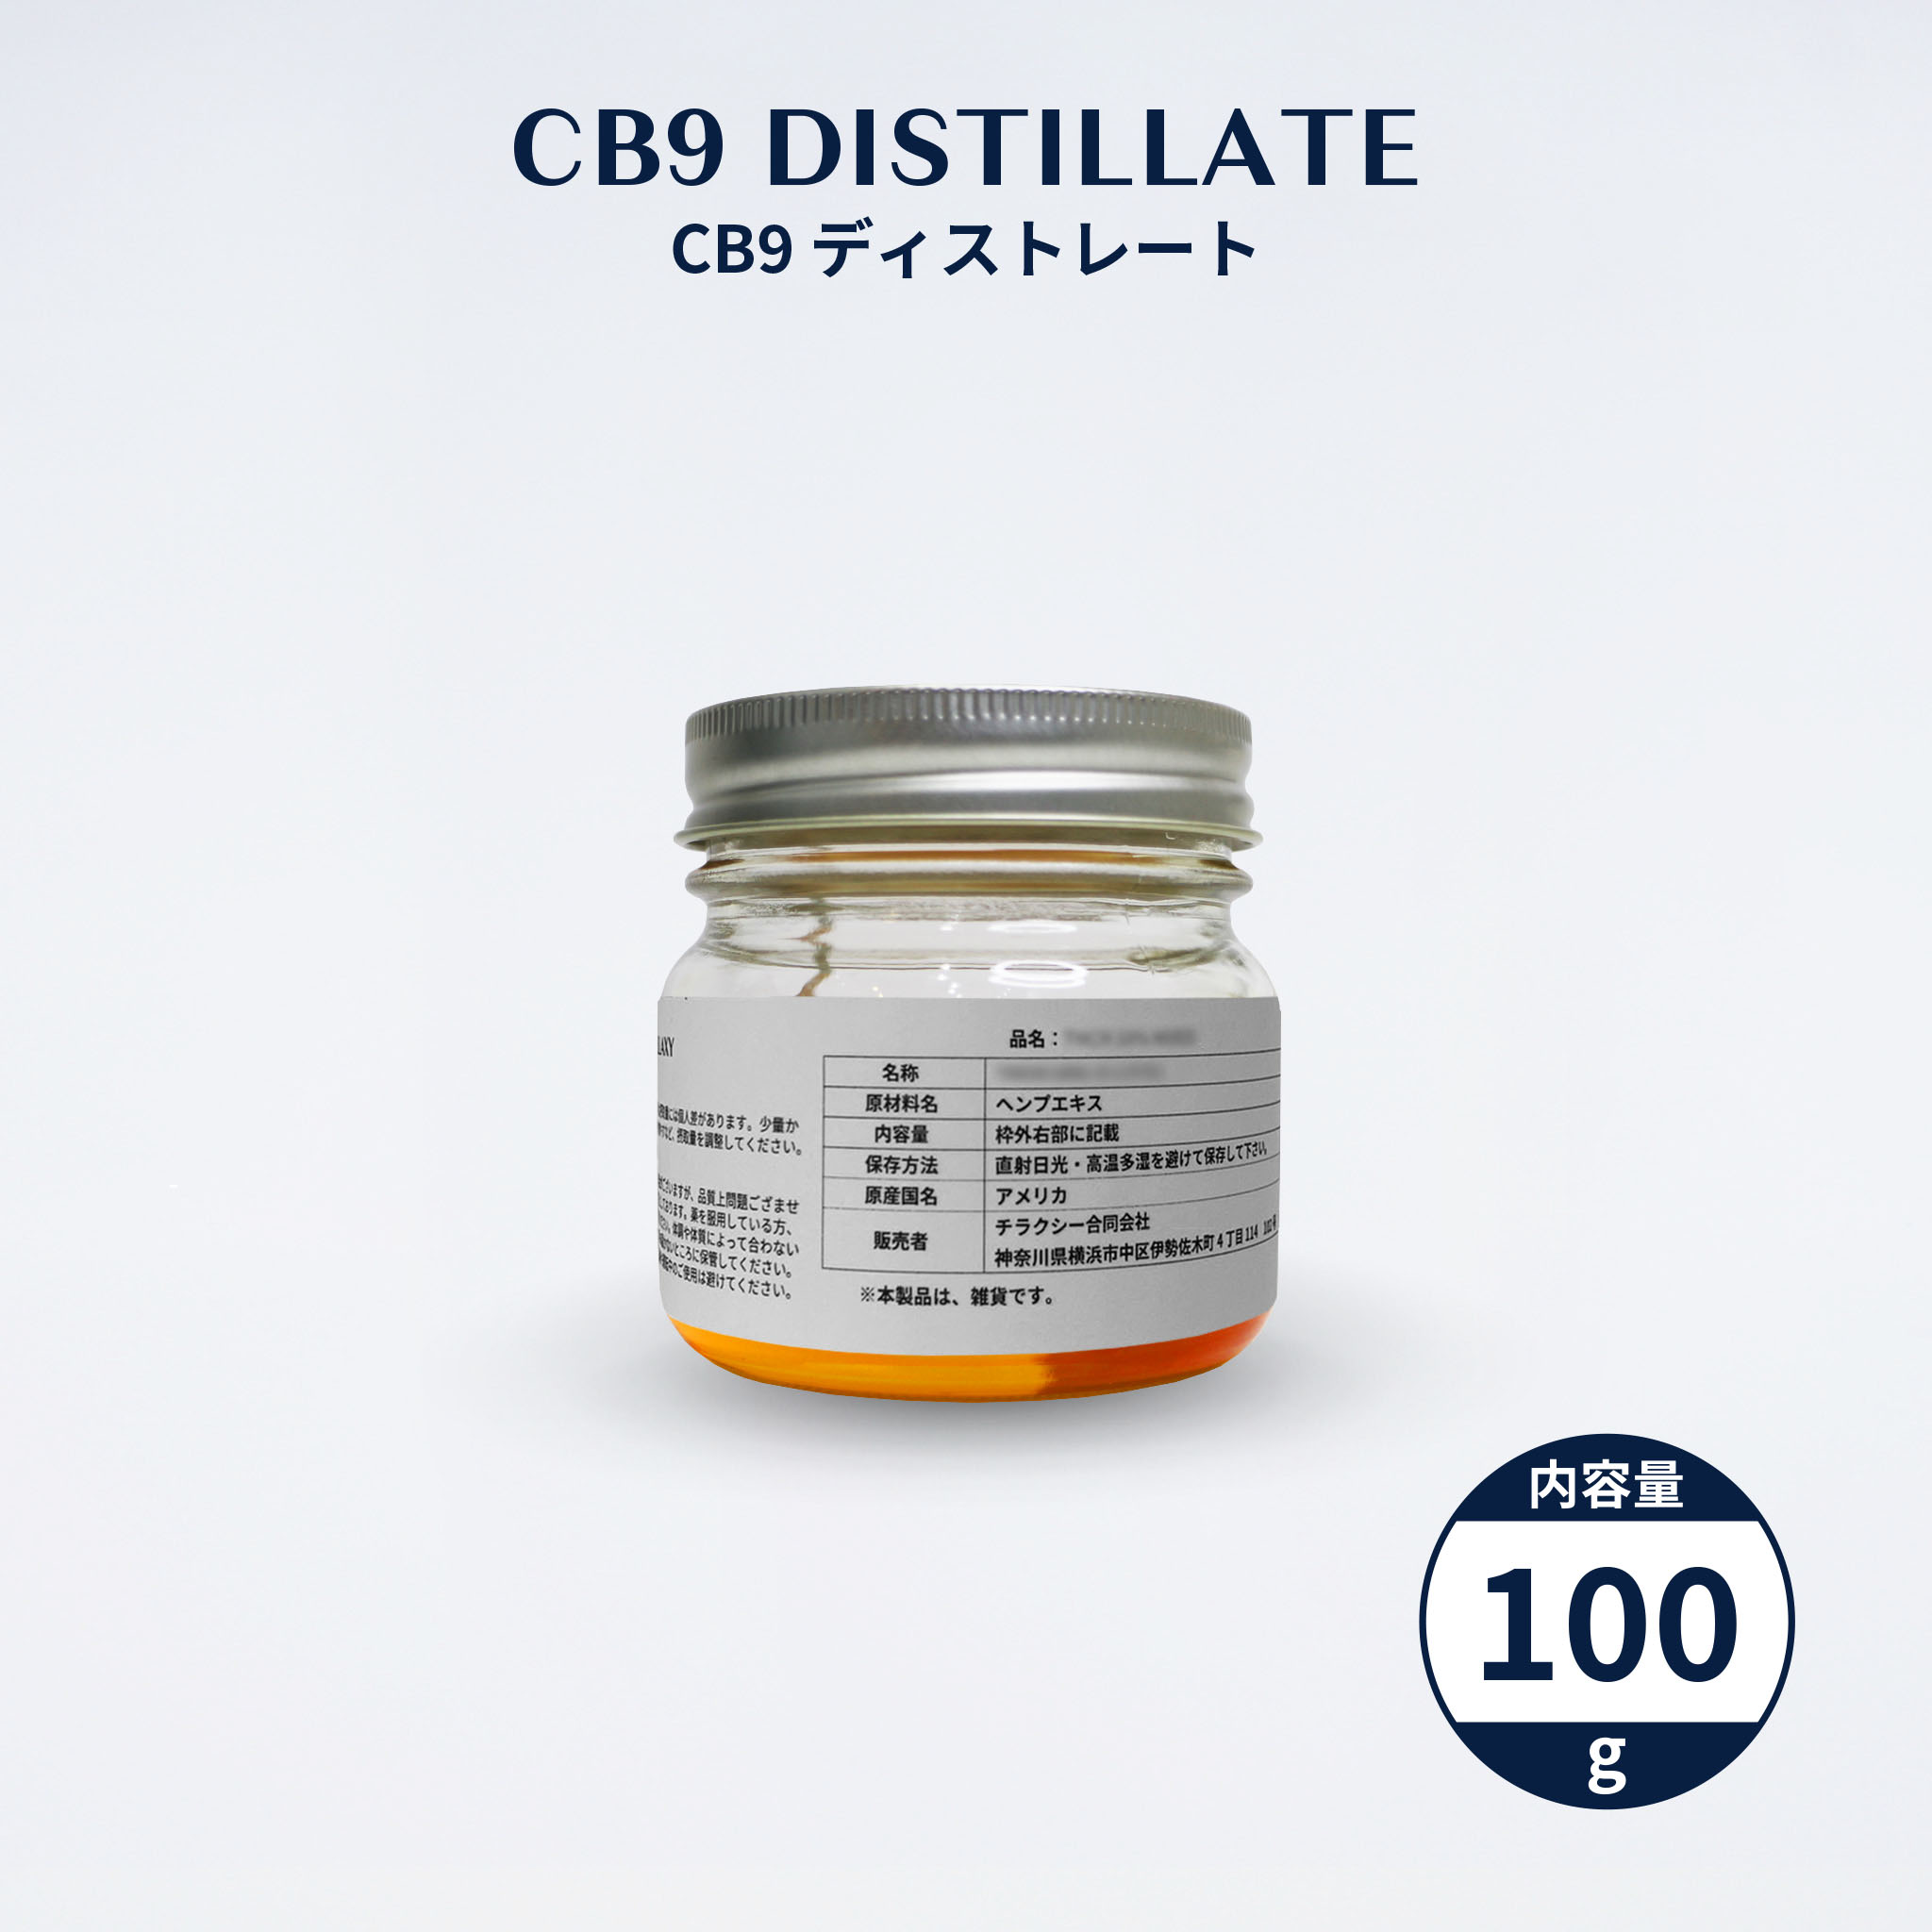 原料　レクリエーション原料２ - CHILLAXY - チラクシー - CBD - カンナビジオール - ヘンプ